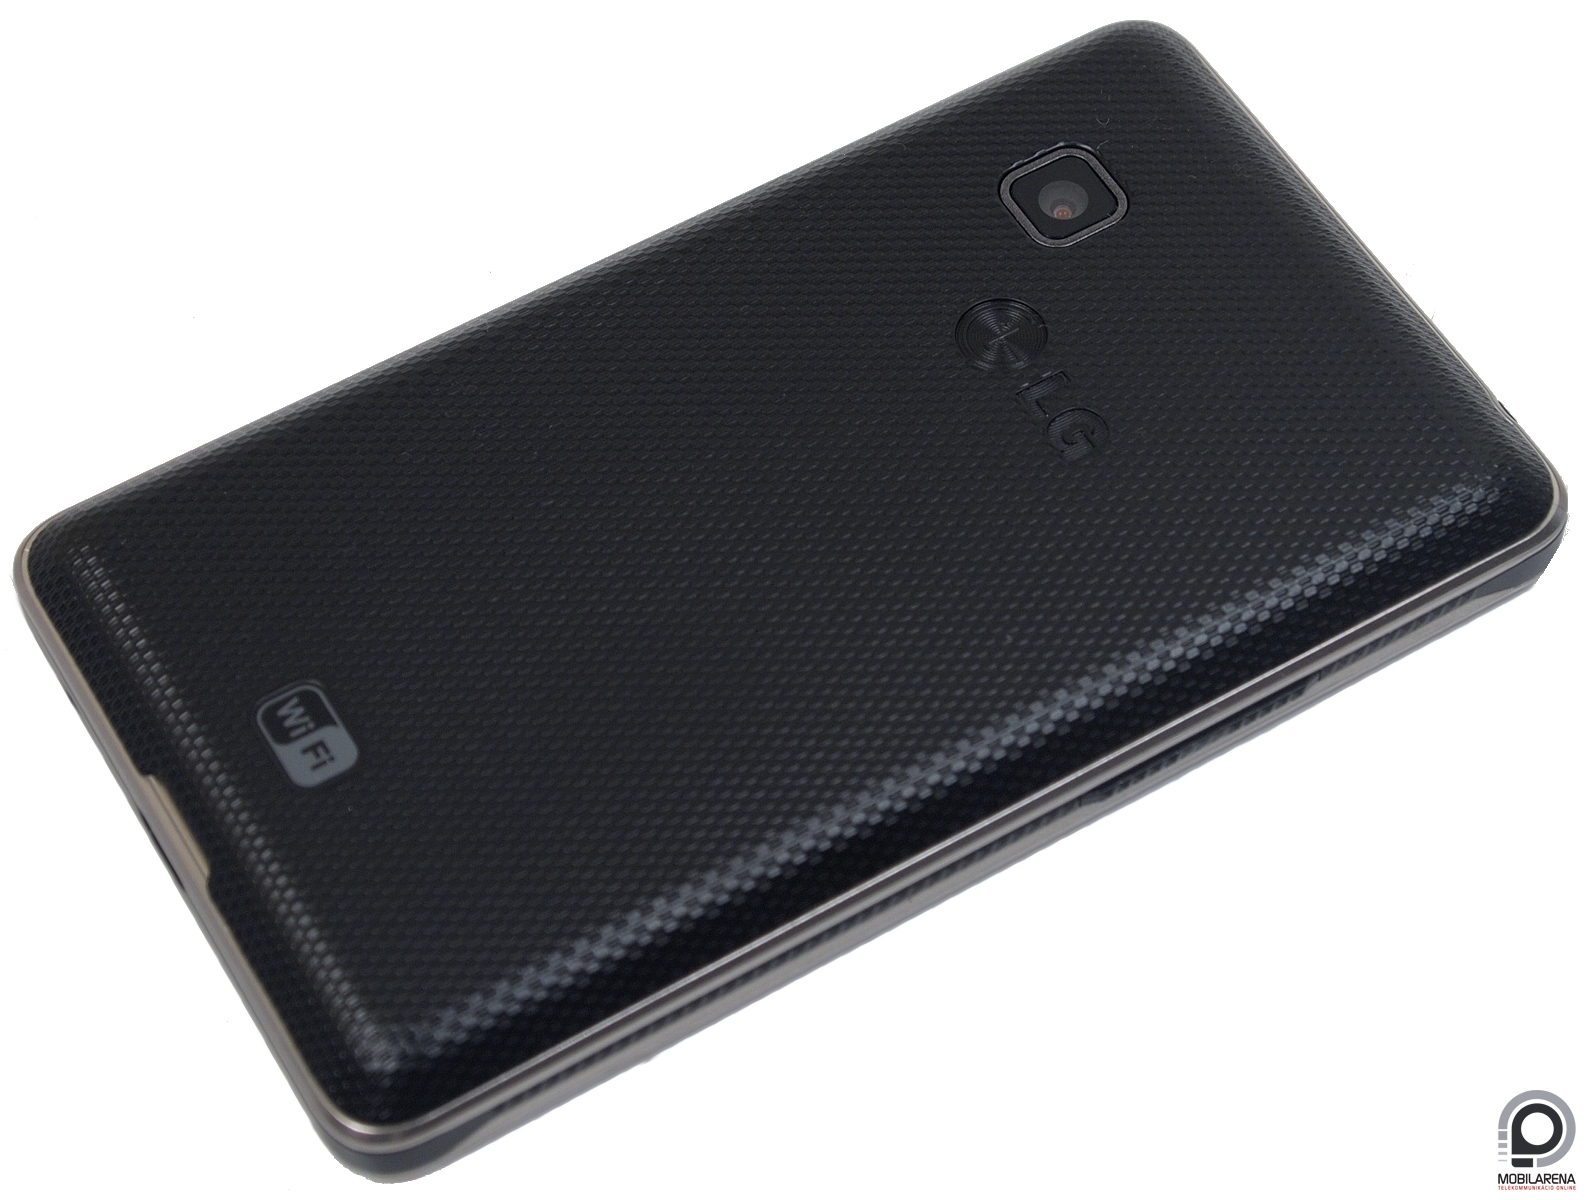 LG T385 - okos is és nem is - Mobilarena Mobiltelefon teszt